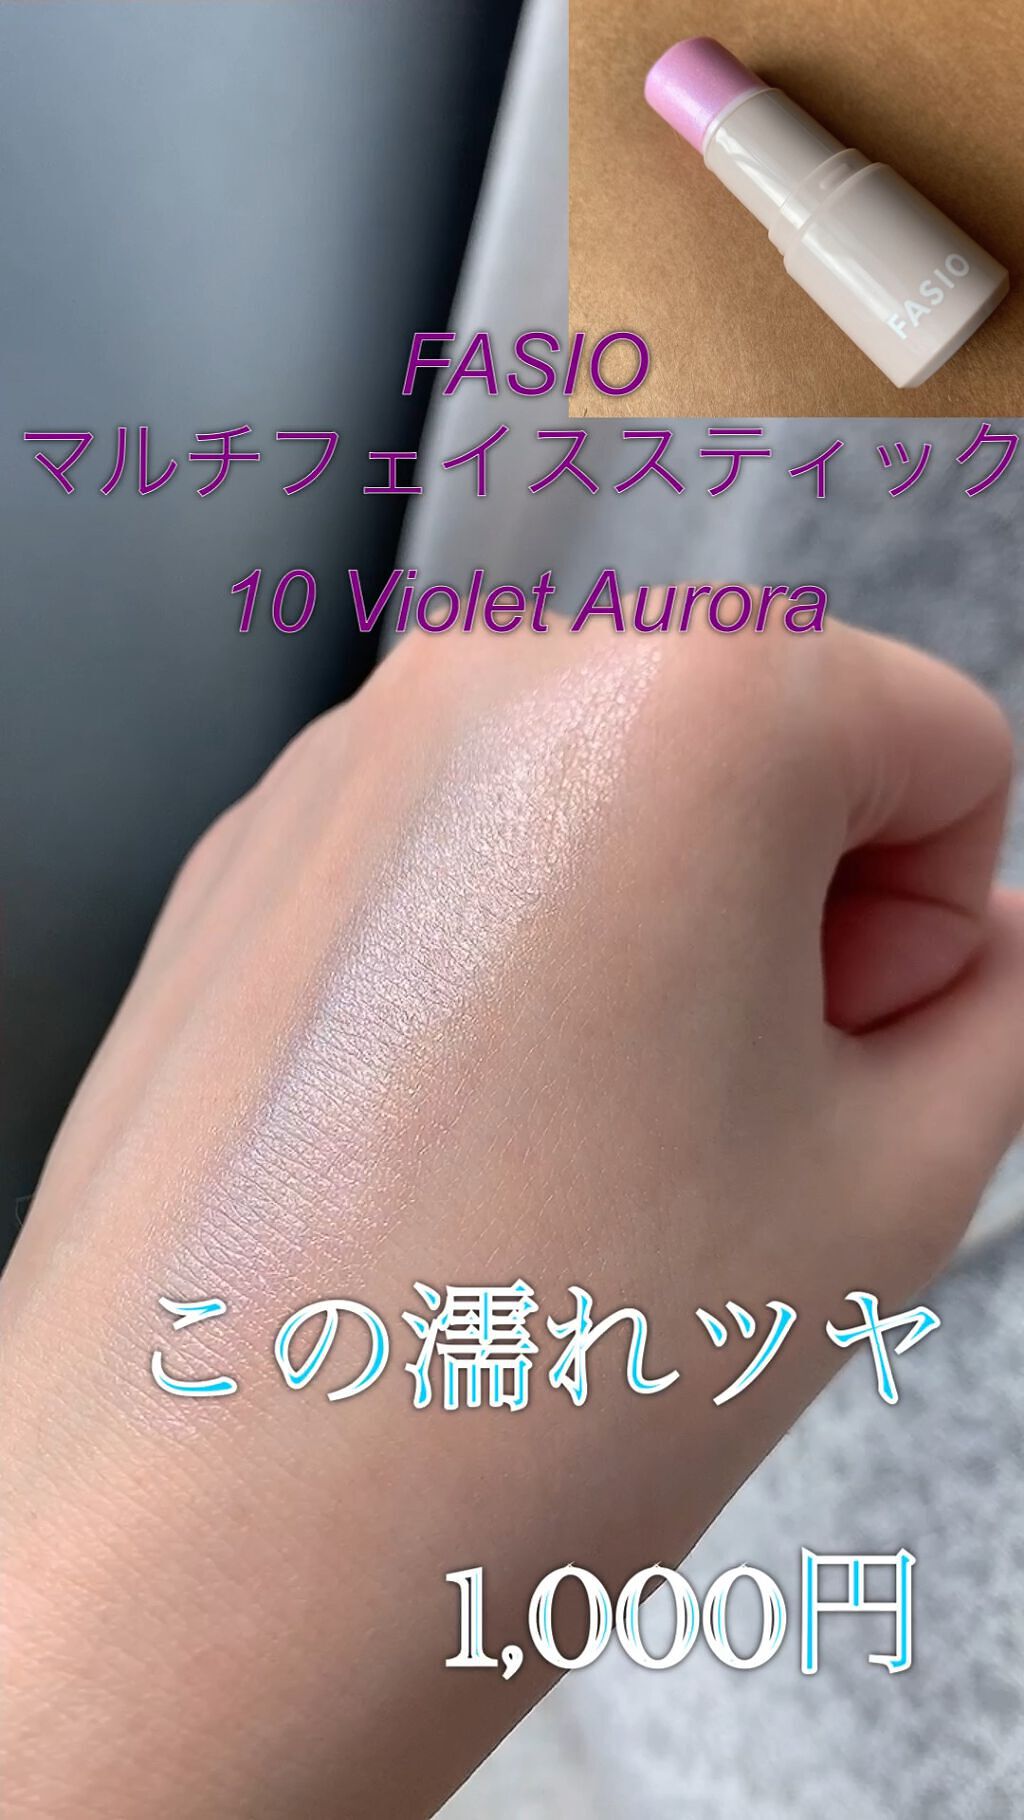 マルチフェイス スティック 10 Violet Aurora / FASIO(ファシオ) | LIPS